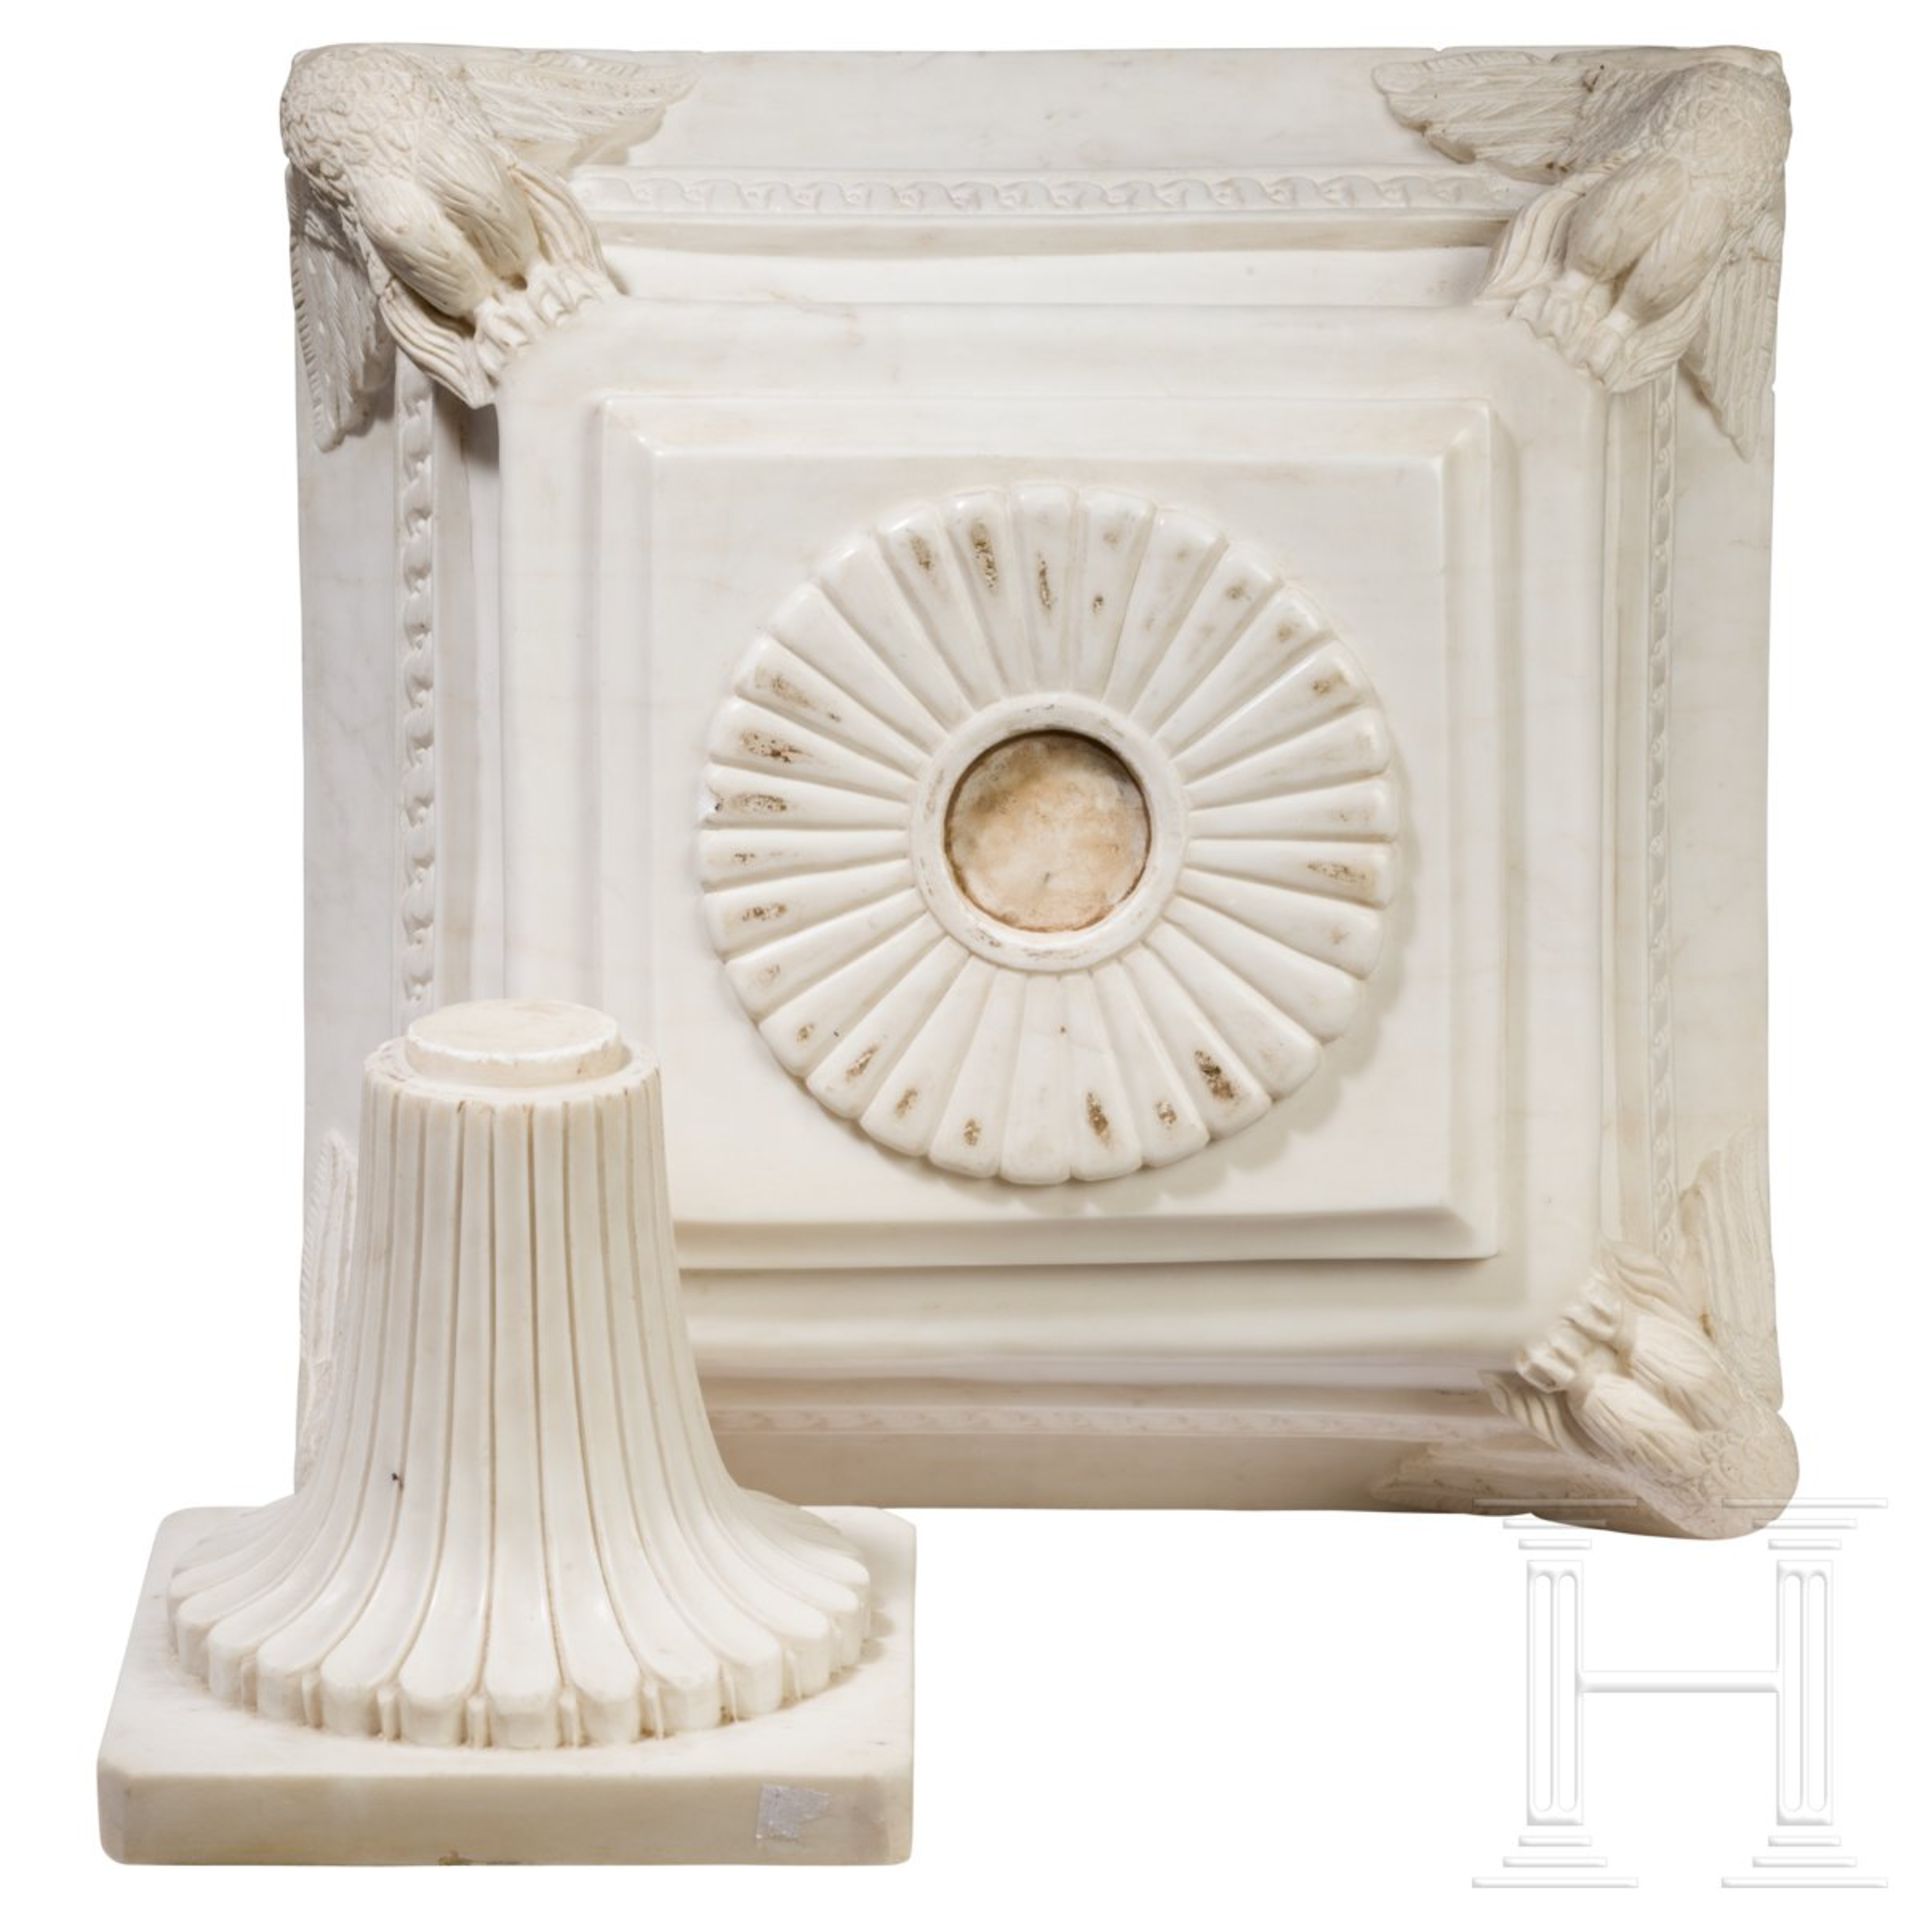 Außergewöhnliche Tazza im klassizistischen Stil, ItalienMassiver, zweiteiliger Aufbau in weißem - Bild 3 aus 5